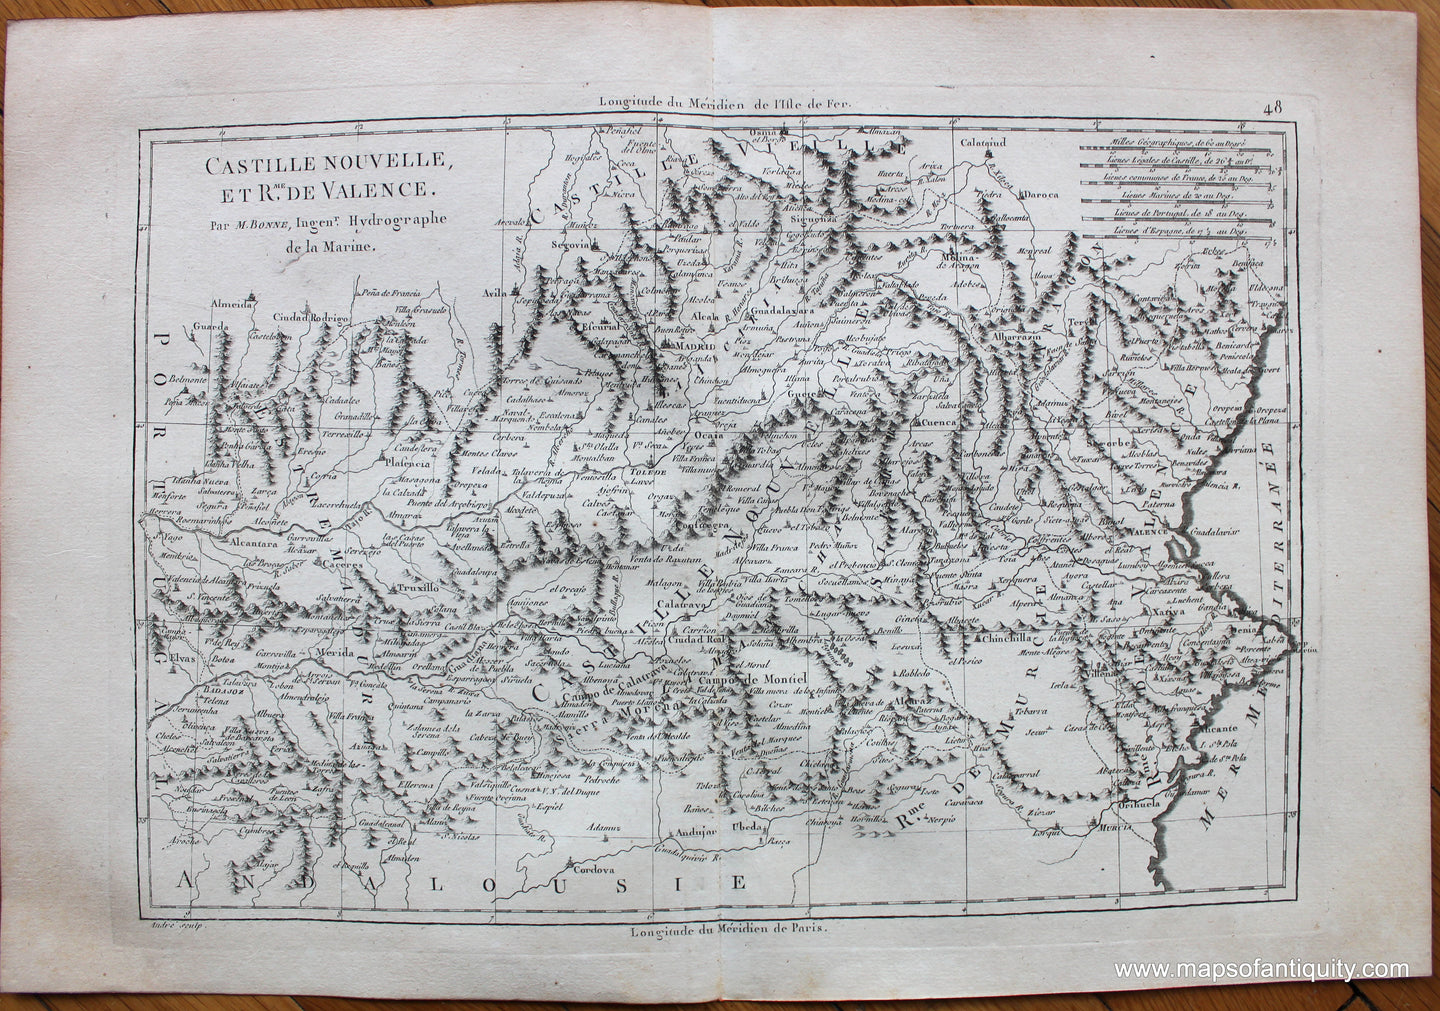 Genuine-Antique-Map-Castille-Nouvelle-et-Rme.-De-Valence-Europe-Spain-&-Portugal-1787-Bonne-and-Desmarest-Maps-Of-Antiquity-1800s-19th-century